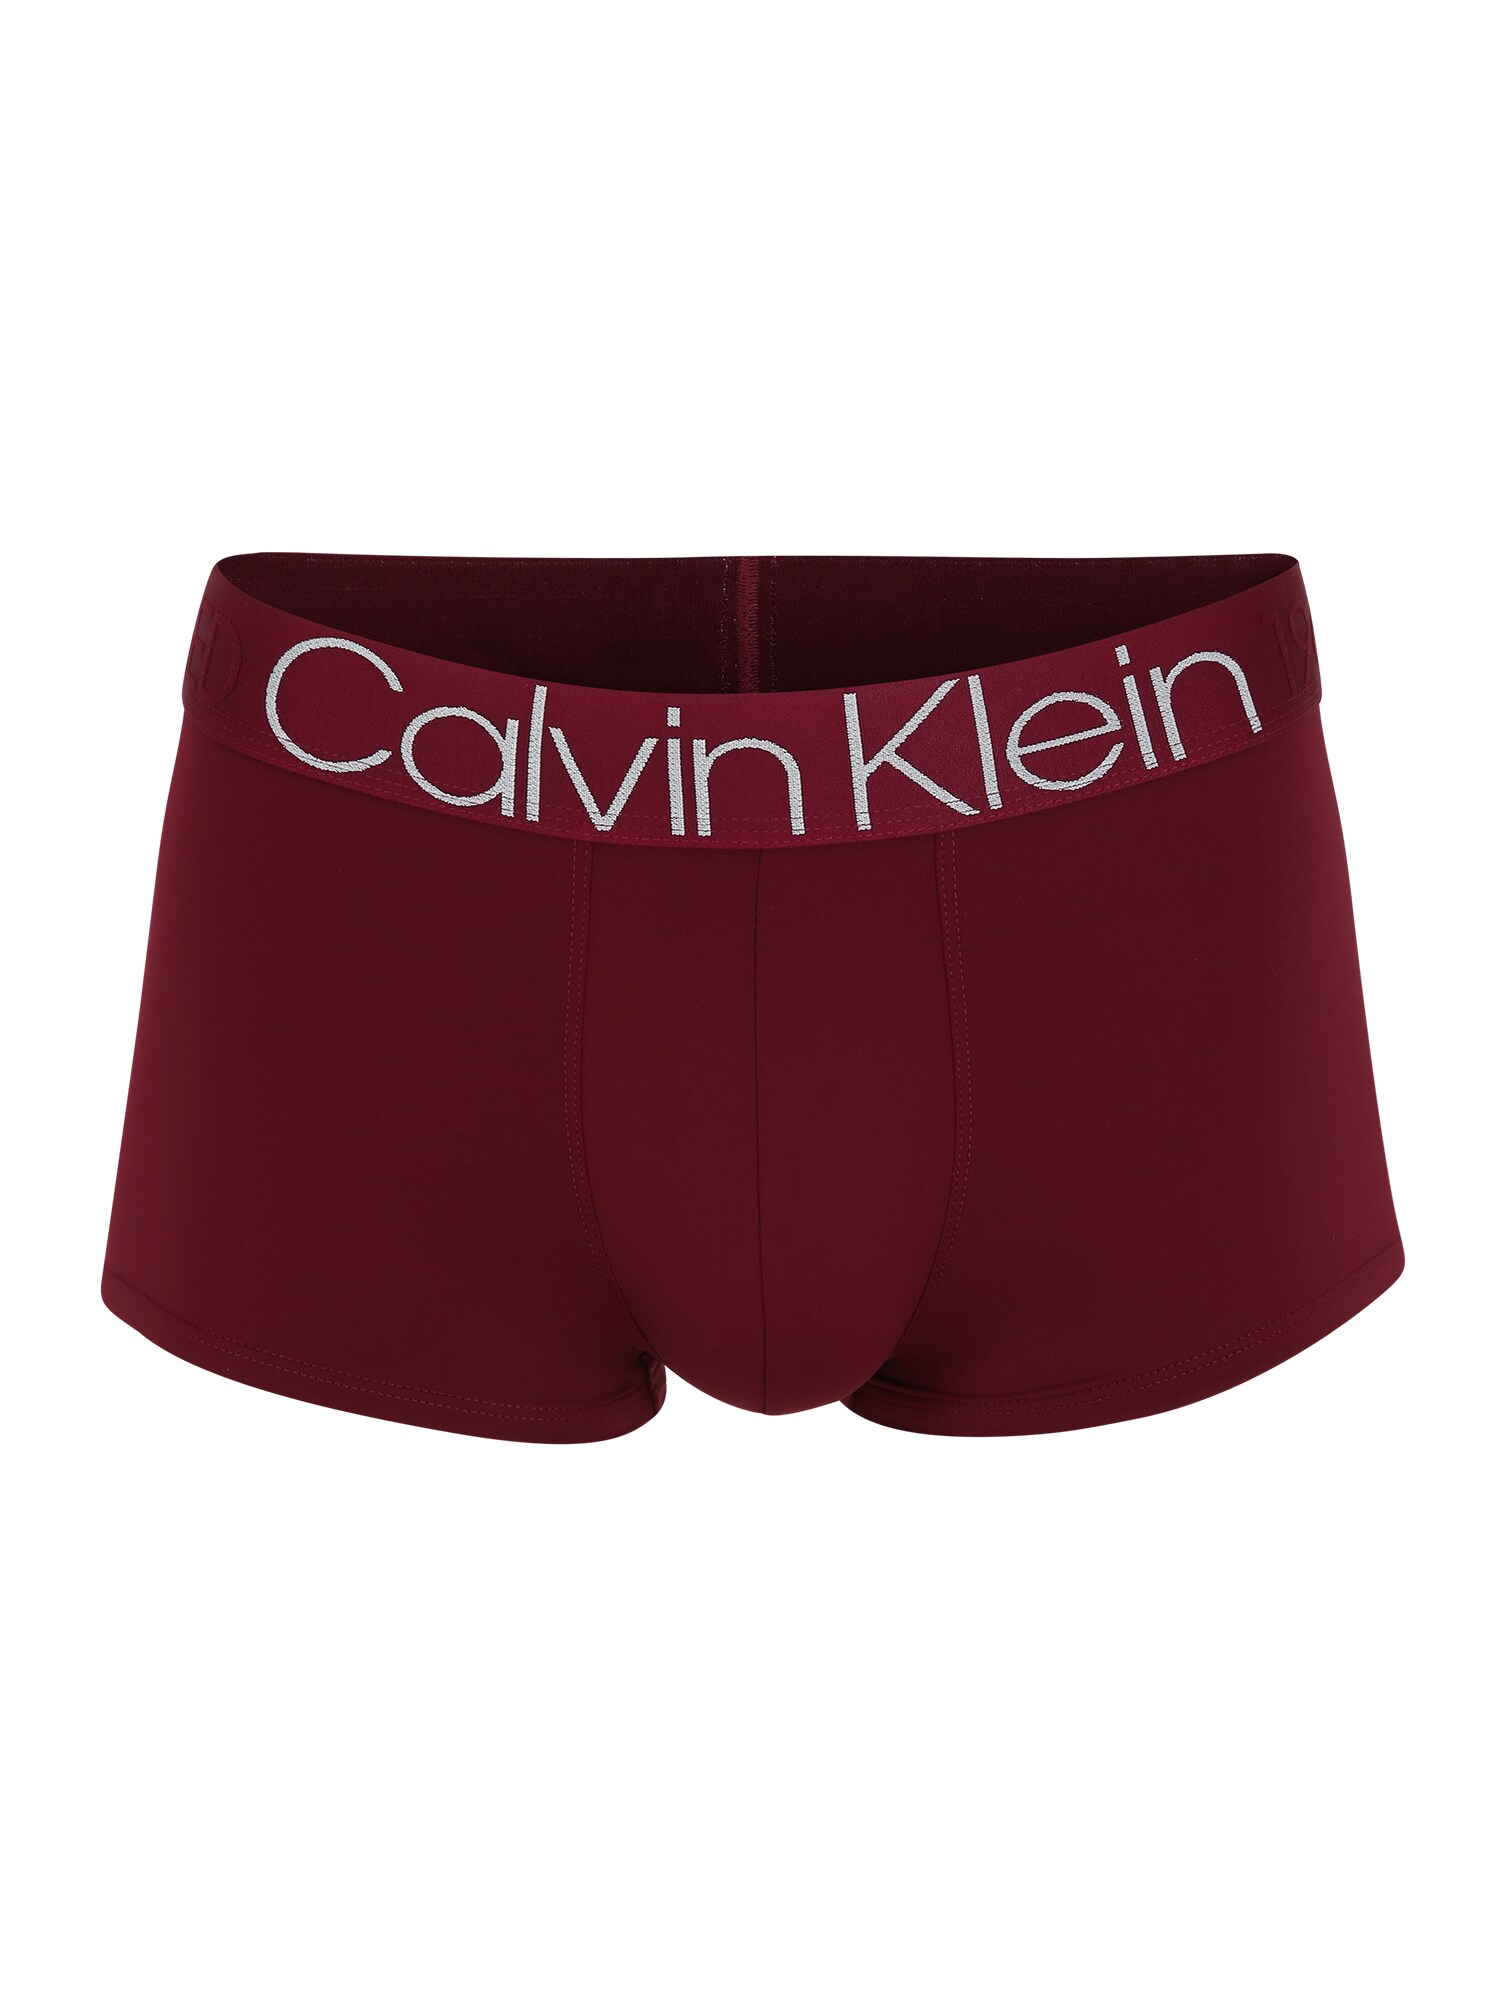 Calvin Klein Underwear Boxer trumpikės  vyšninė spalva / balta